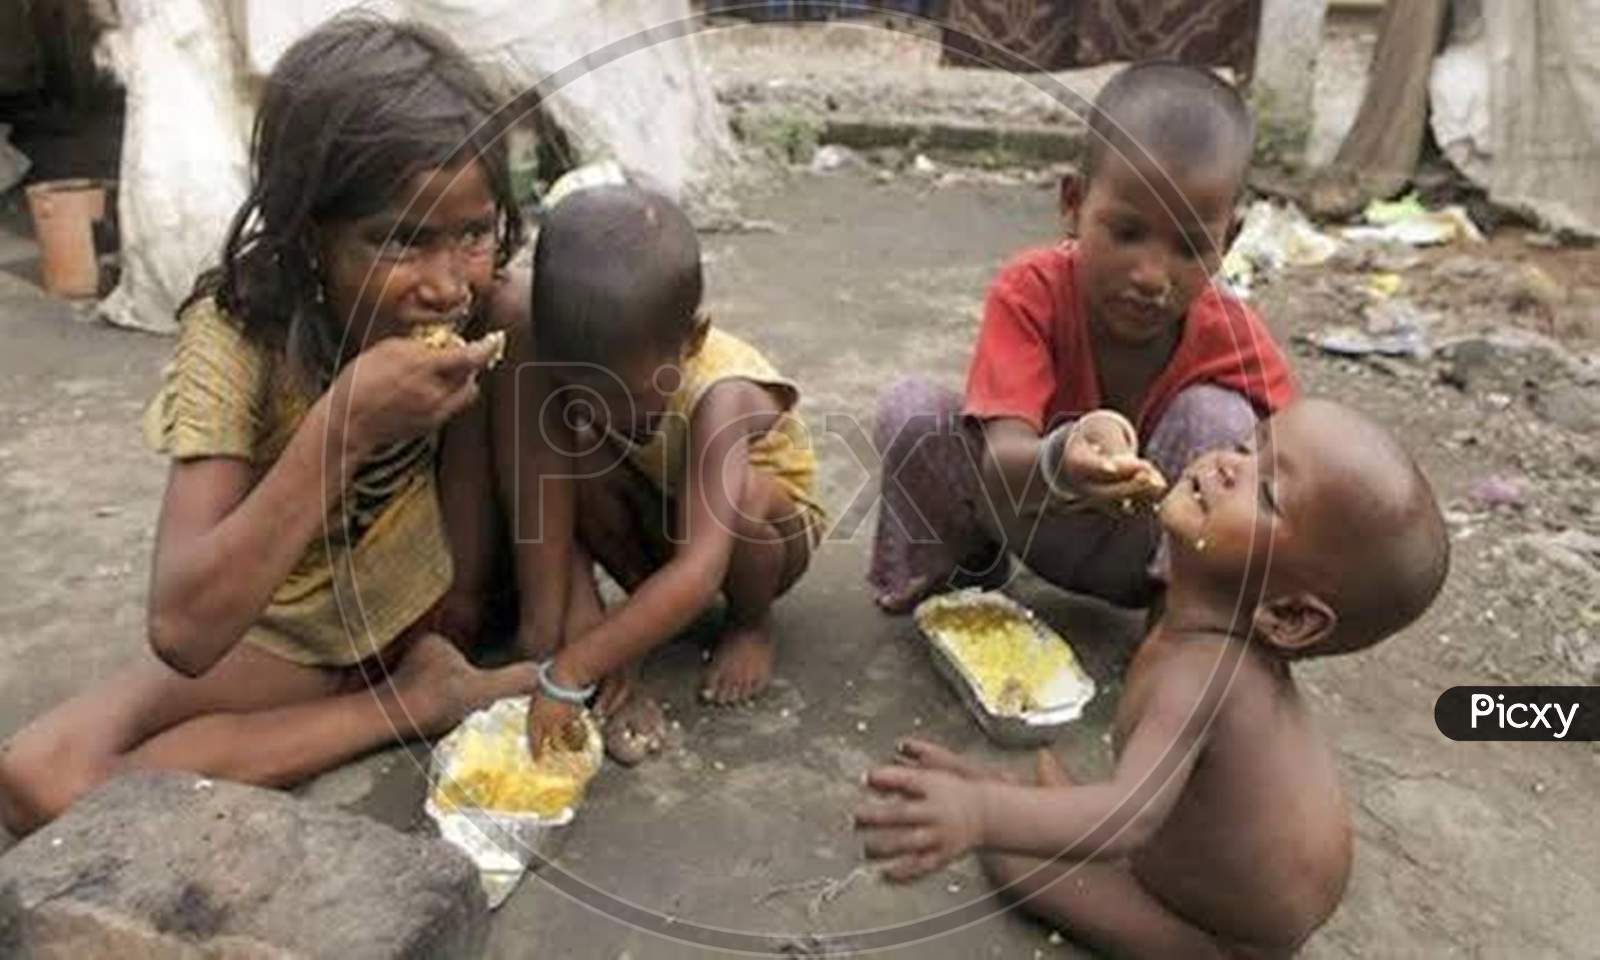 Rural kids taking food